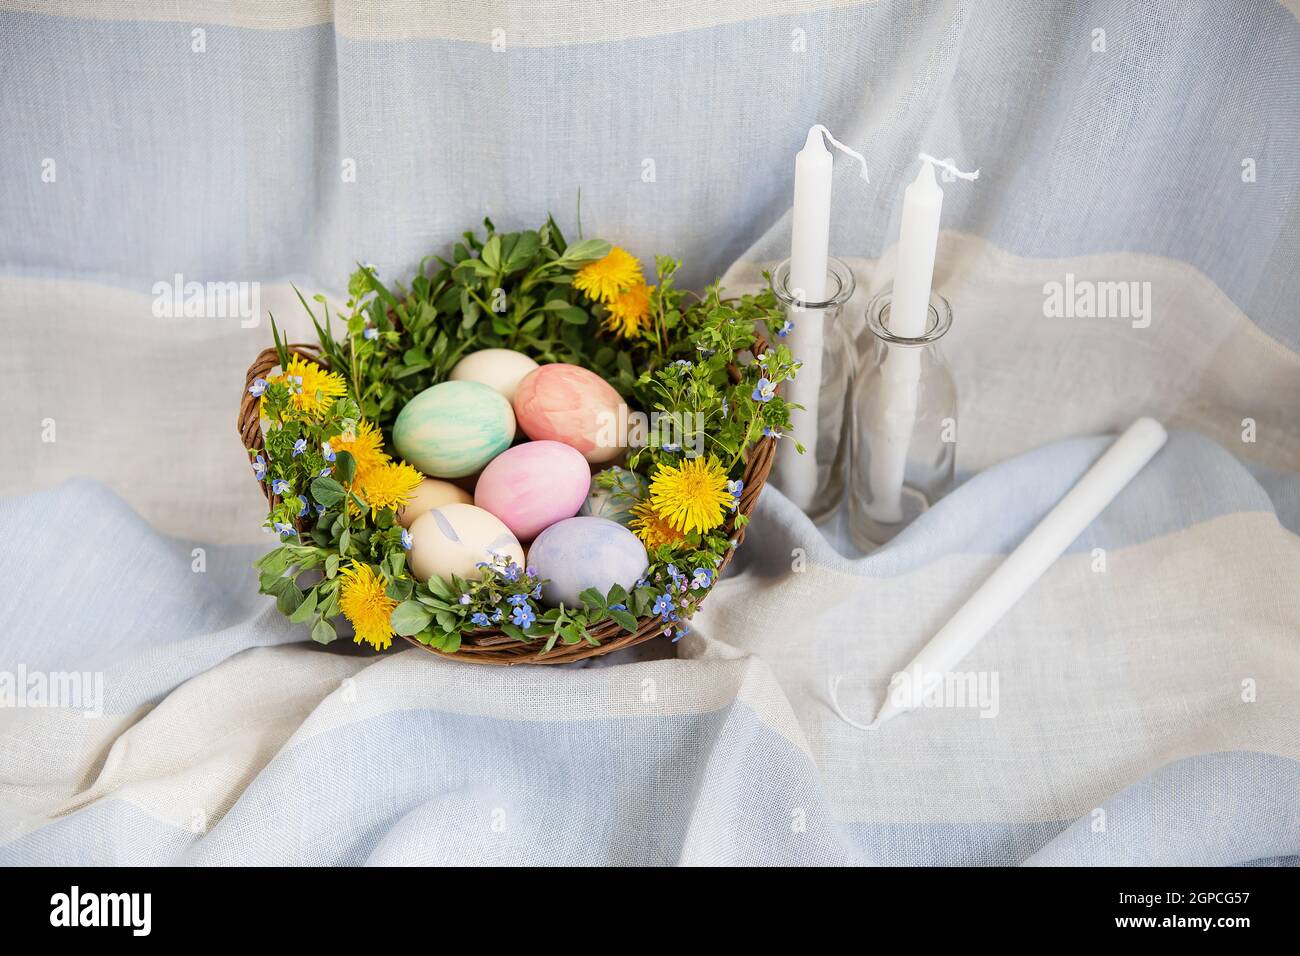 Ein schöner Frühlingsstrauß in einem Holzkorb mit Ostereiern, die mit Aquarellen bemalt sind. Weiße Kerzen liegen in der Nähe Stockfoto